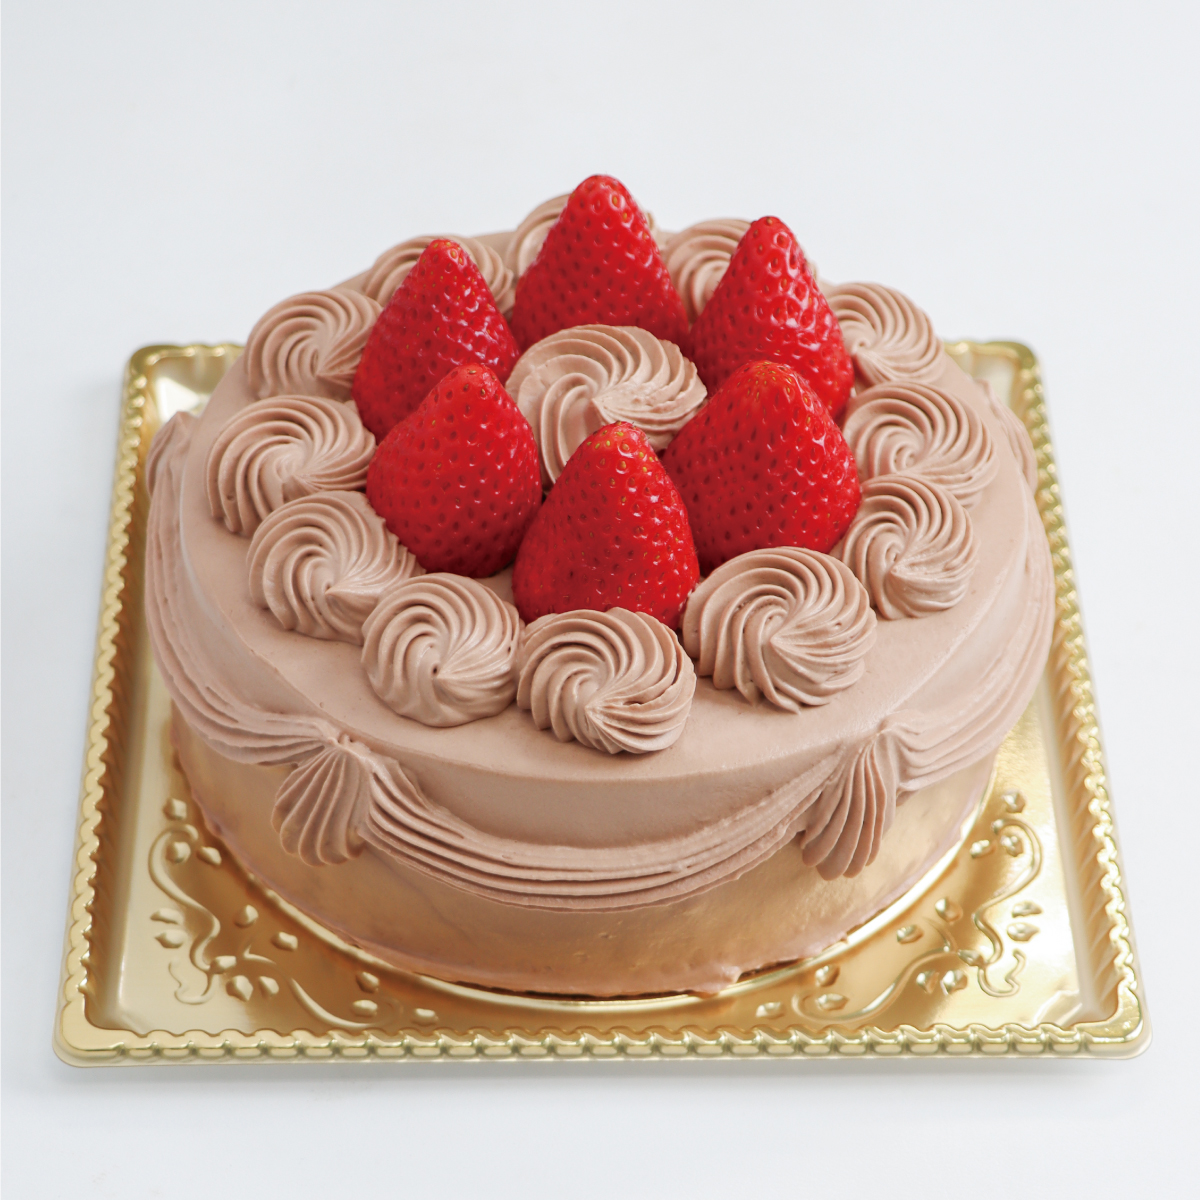 チョコデコレーションケーキ<21cm>